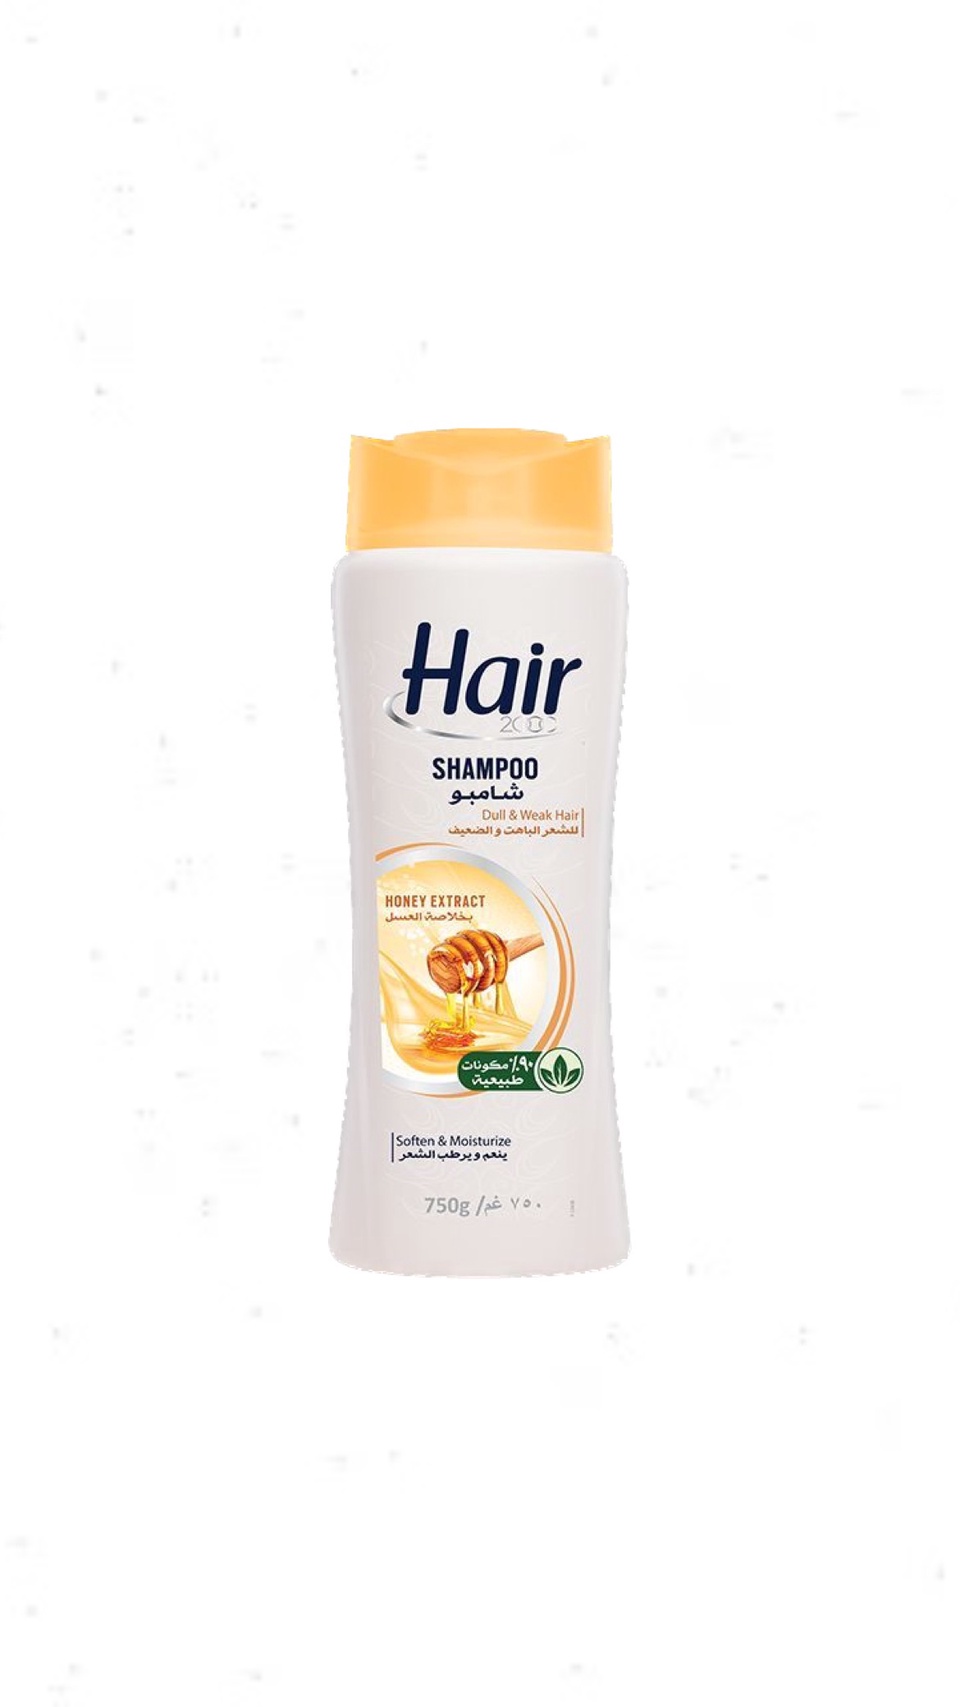 Шампунь Hair для тусклых и ослабленных волос 750 мл - 300 ₽, заказать онлайн.